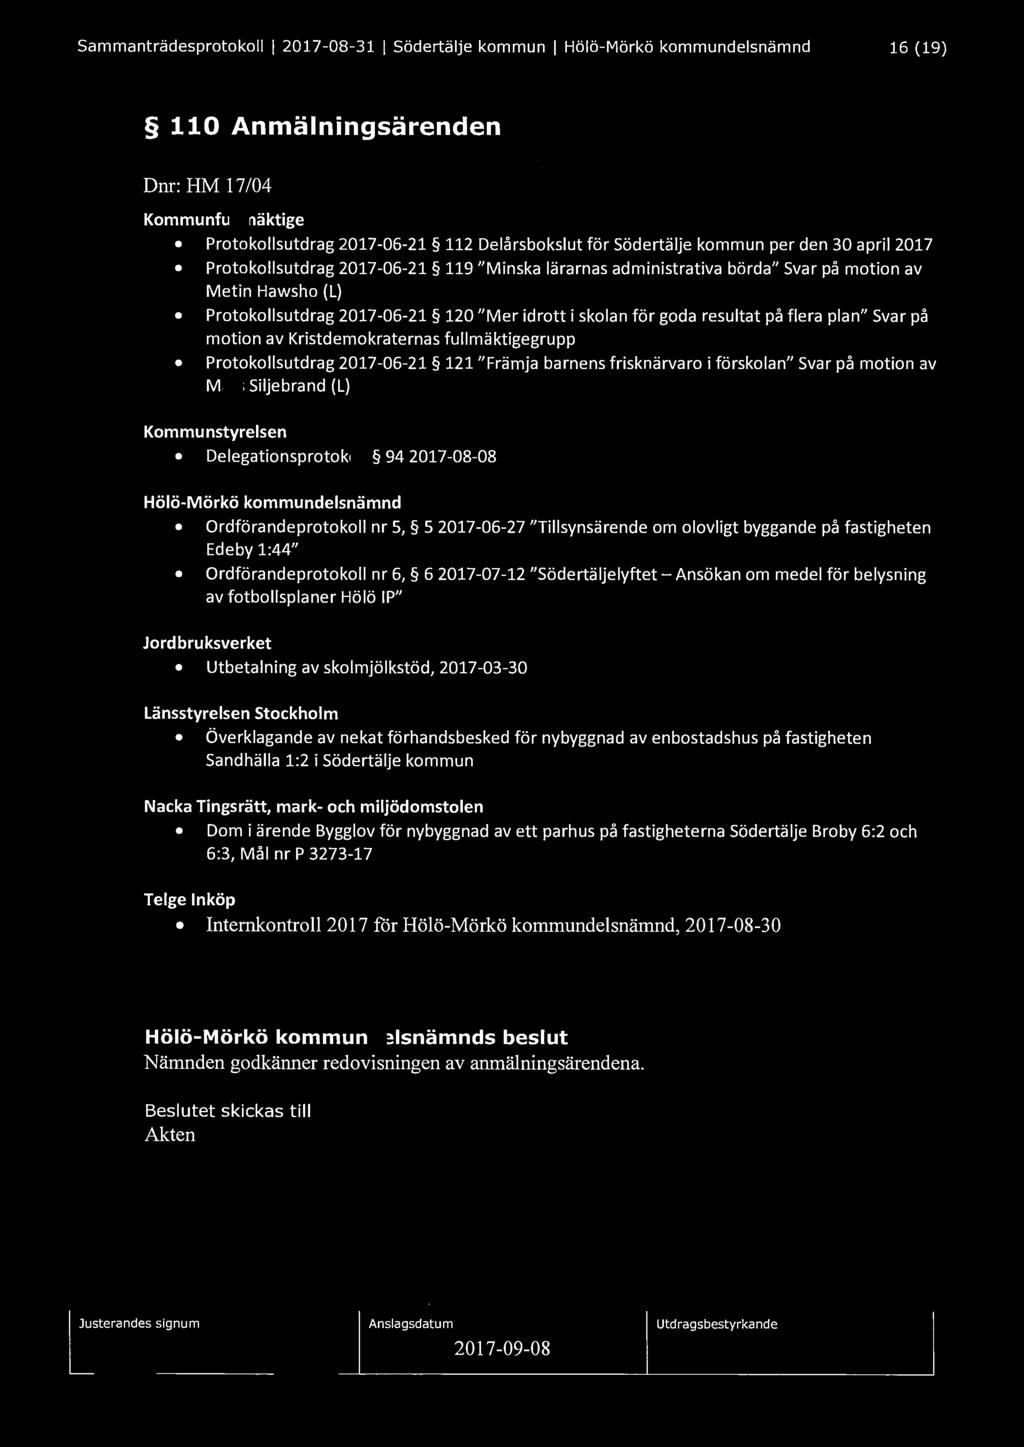 Sammanträdesprotokoll I 2017-08-31 I Södertälje kommun I Hölö-Mörkö kommundelsnämnd 16 (19) 110 Anmälningsärenden Dnr: HM 17/04 Kommunfullmäktige Protokollsutdrag 2017-06-21 112 Delårsbokslut för